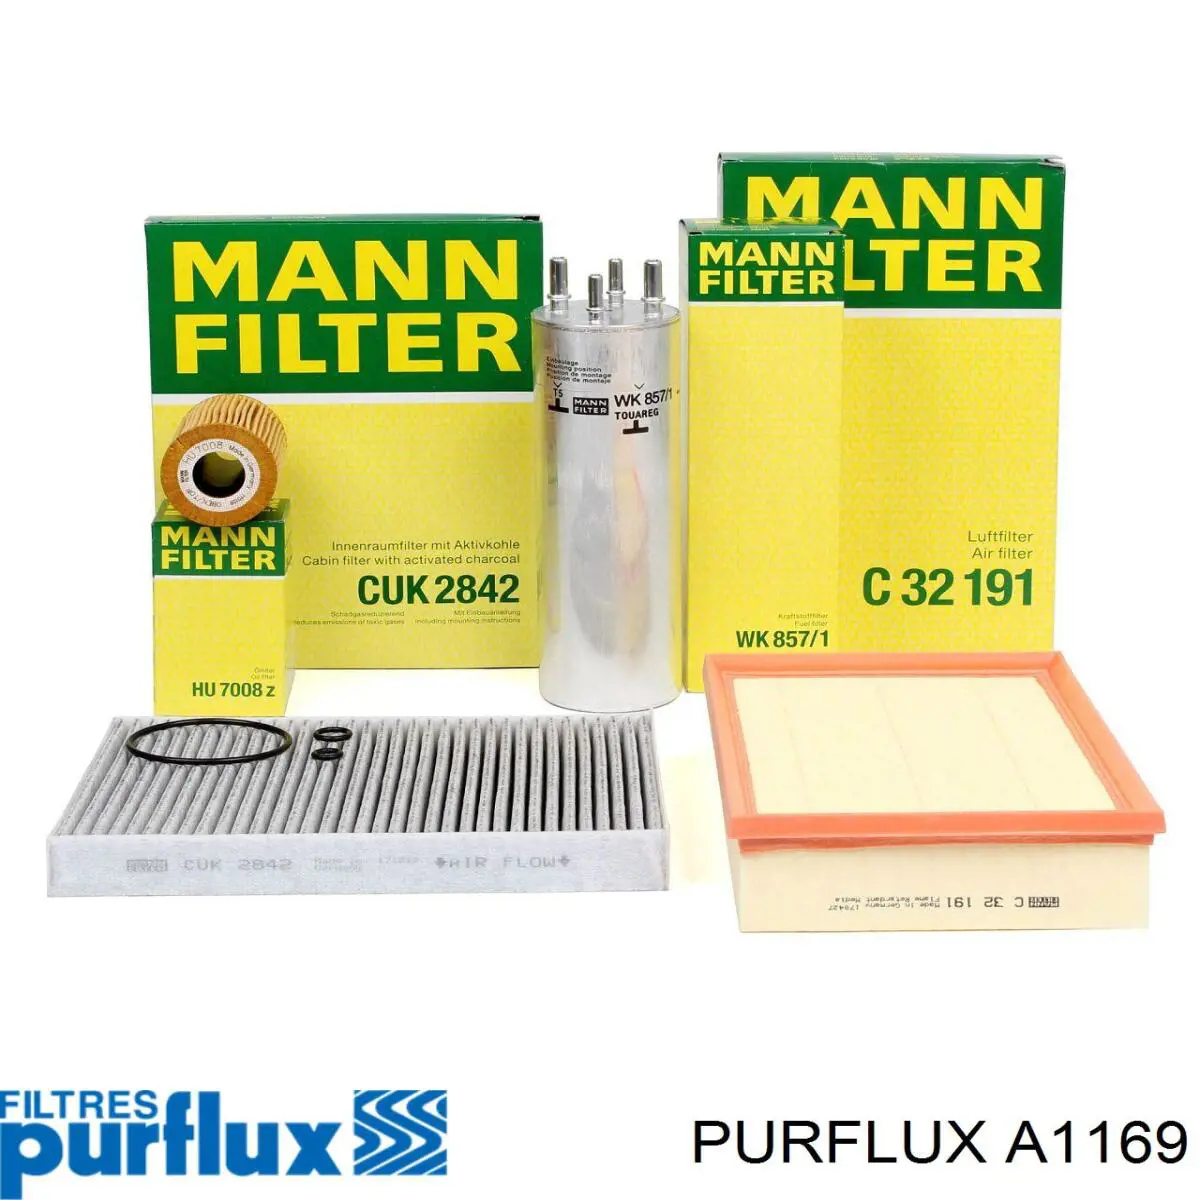 A1169 Purflux filtro de aire